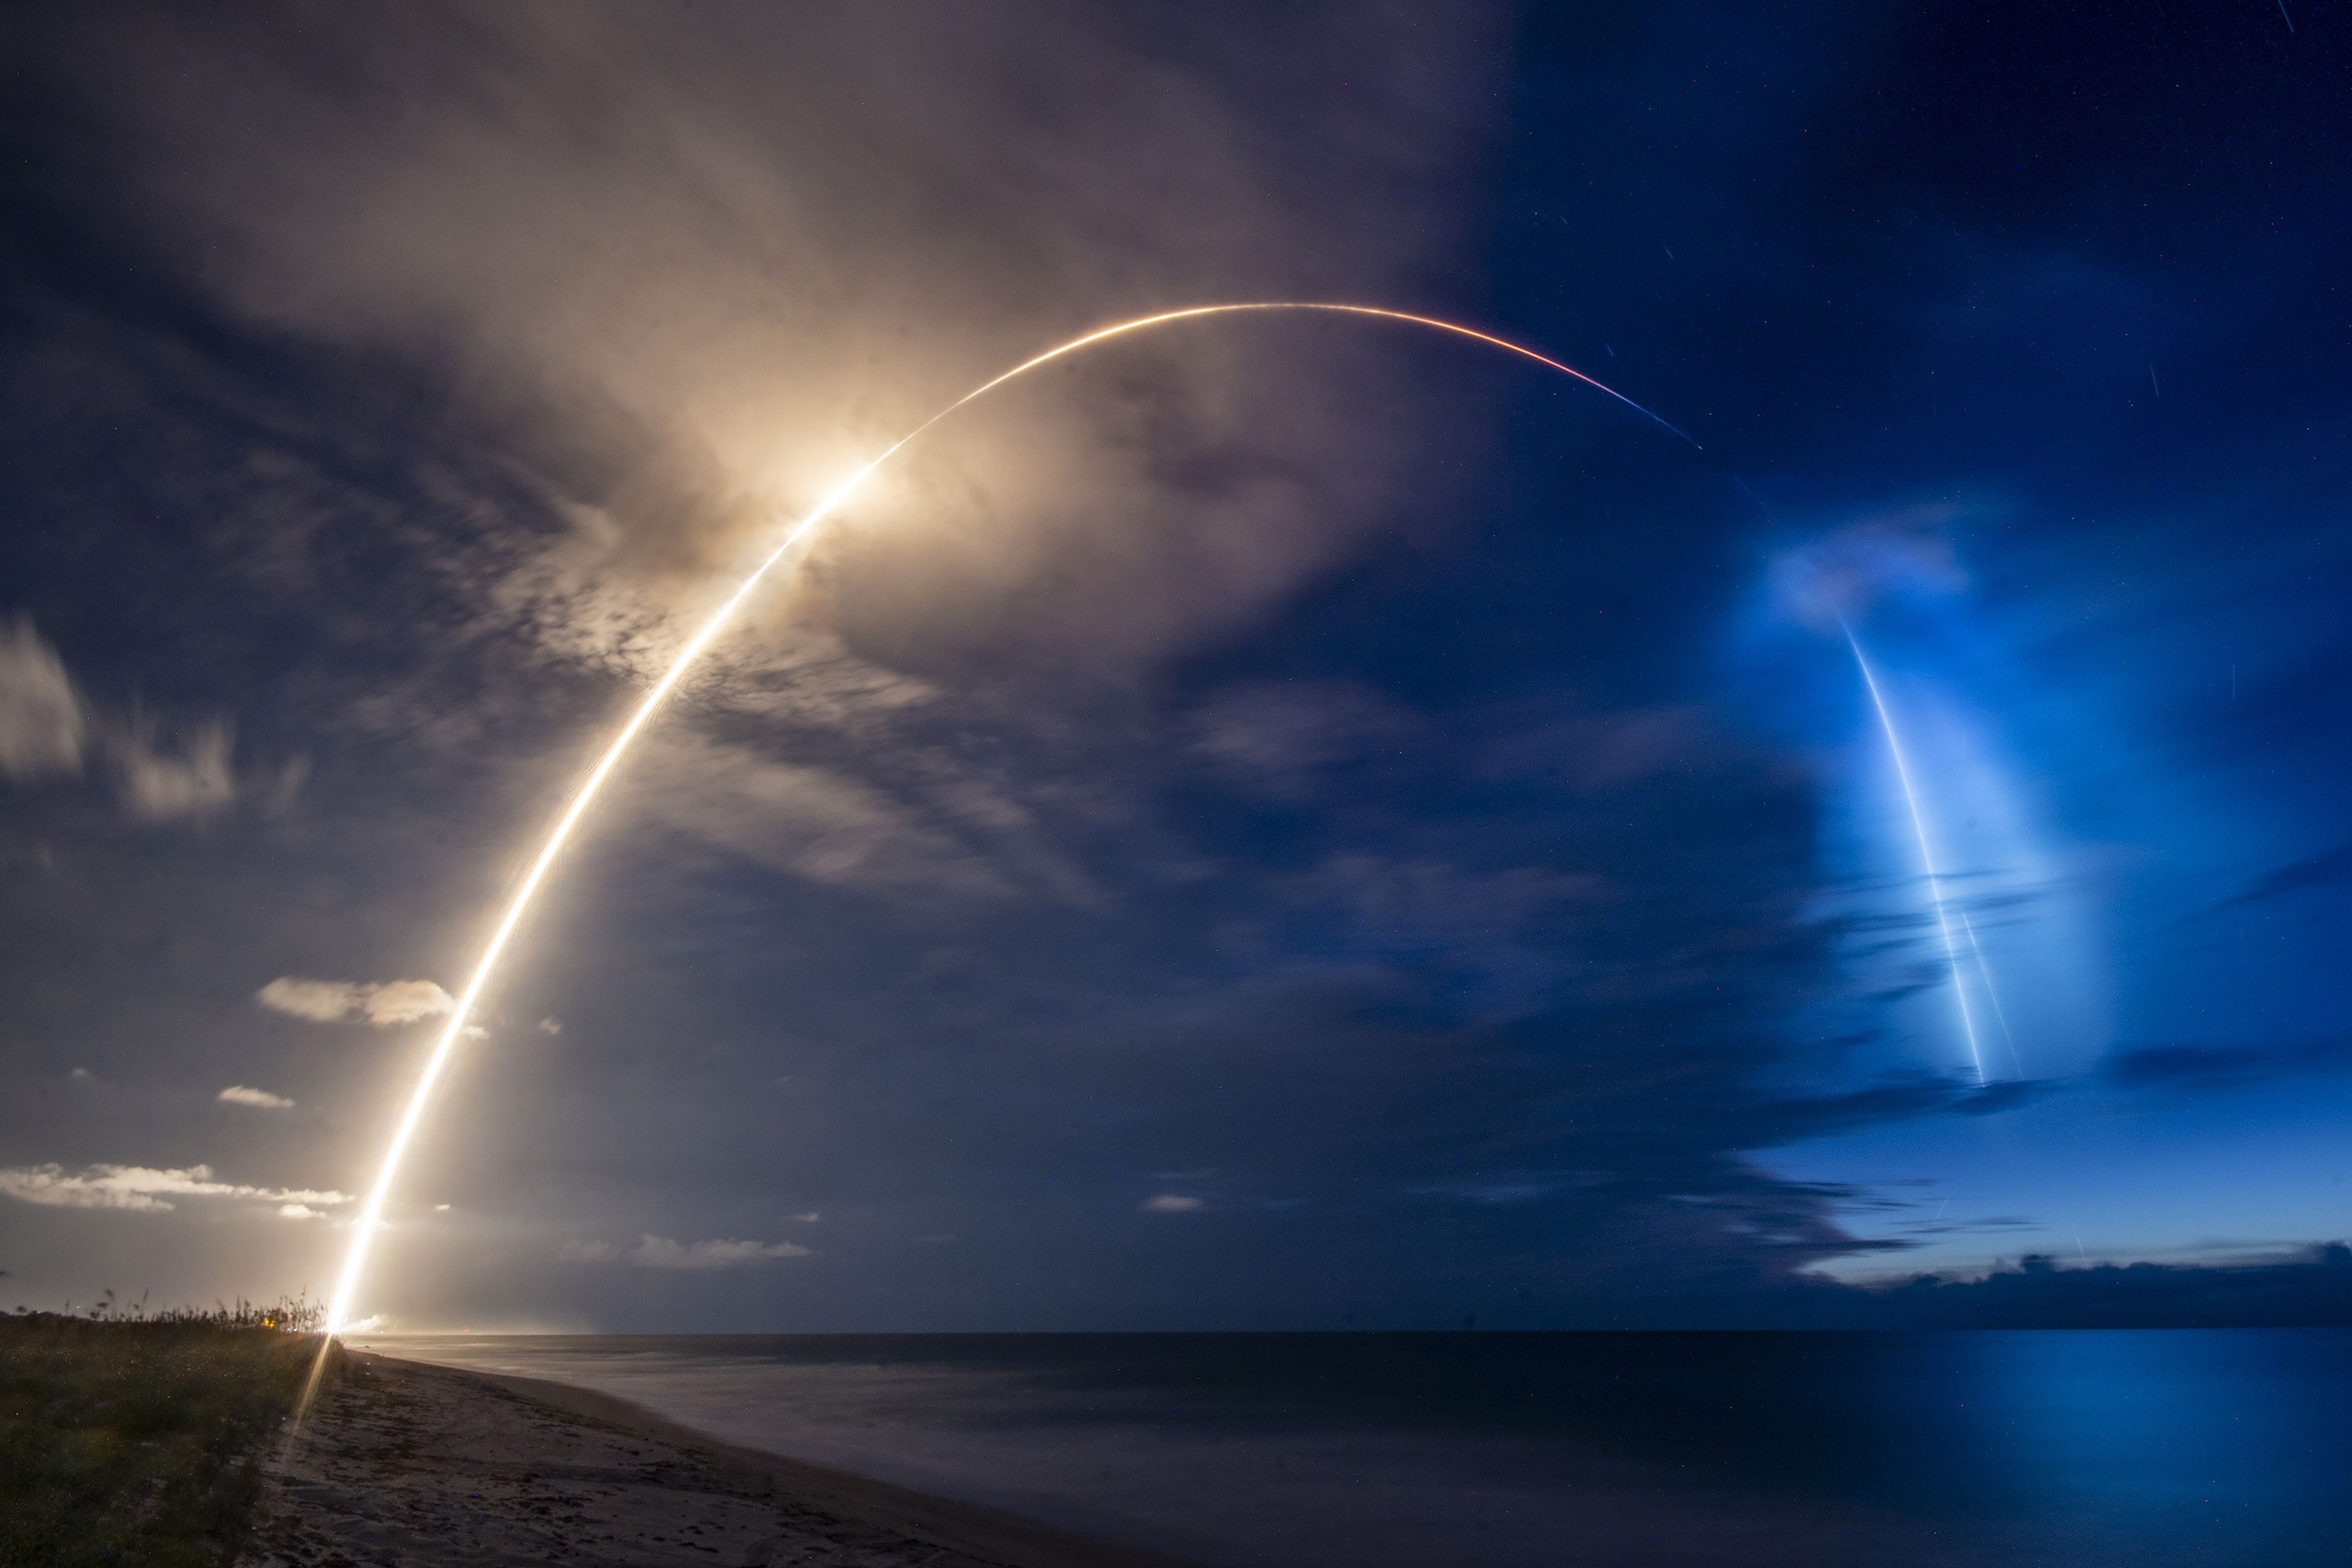 La misión Starlink-8 de SpaceX puso en órbita un noveno pack de satélites que transmiten Internet el pasado 13 de junio de 2020. En su lanzamiento dejaron una impresionante nube de arco iris azul en los cielos de la costa de Florida